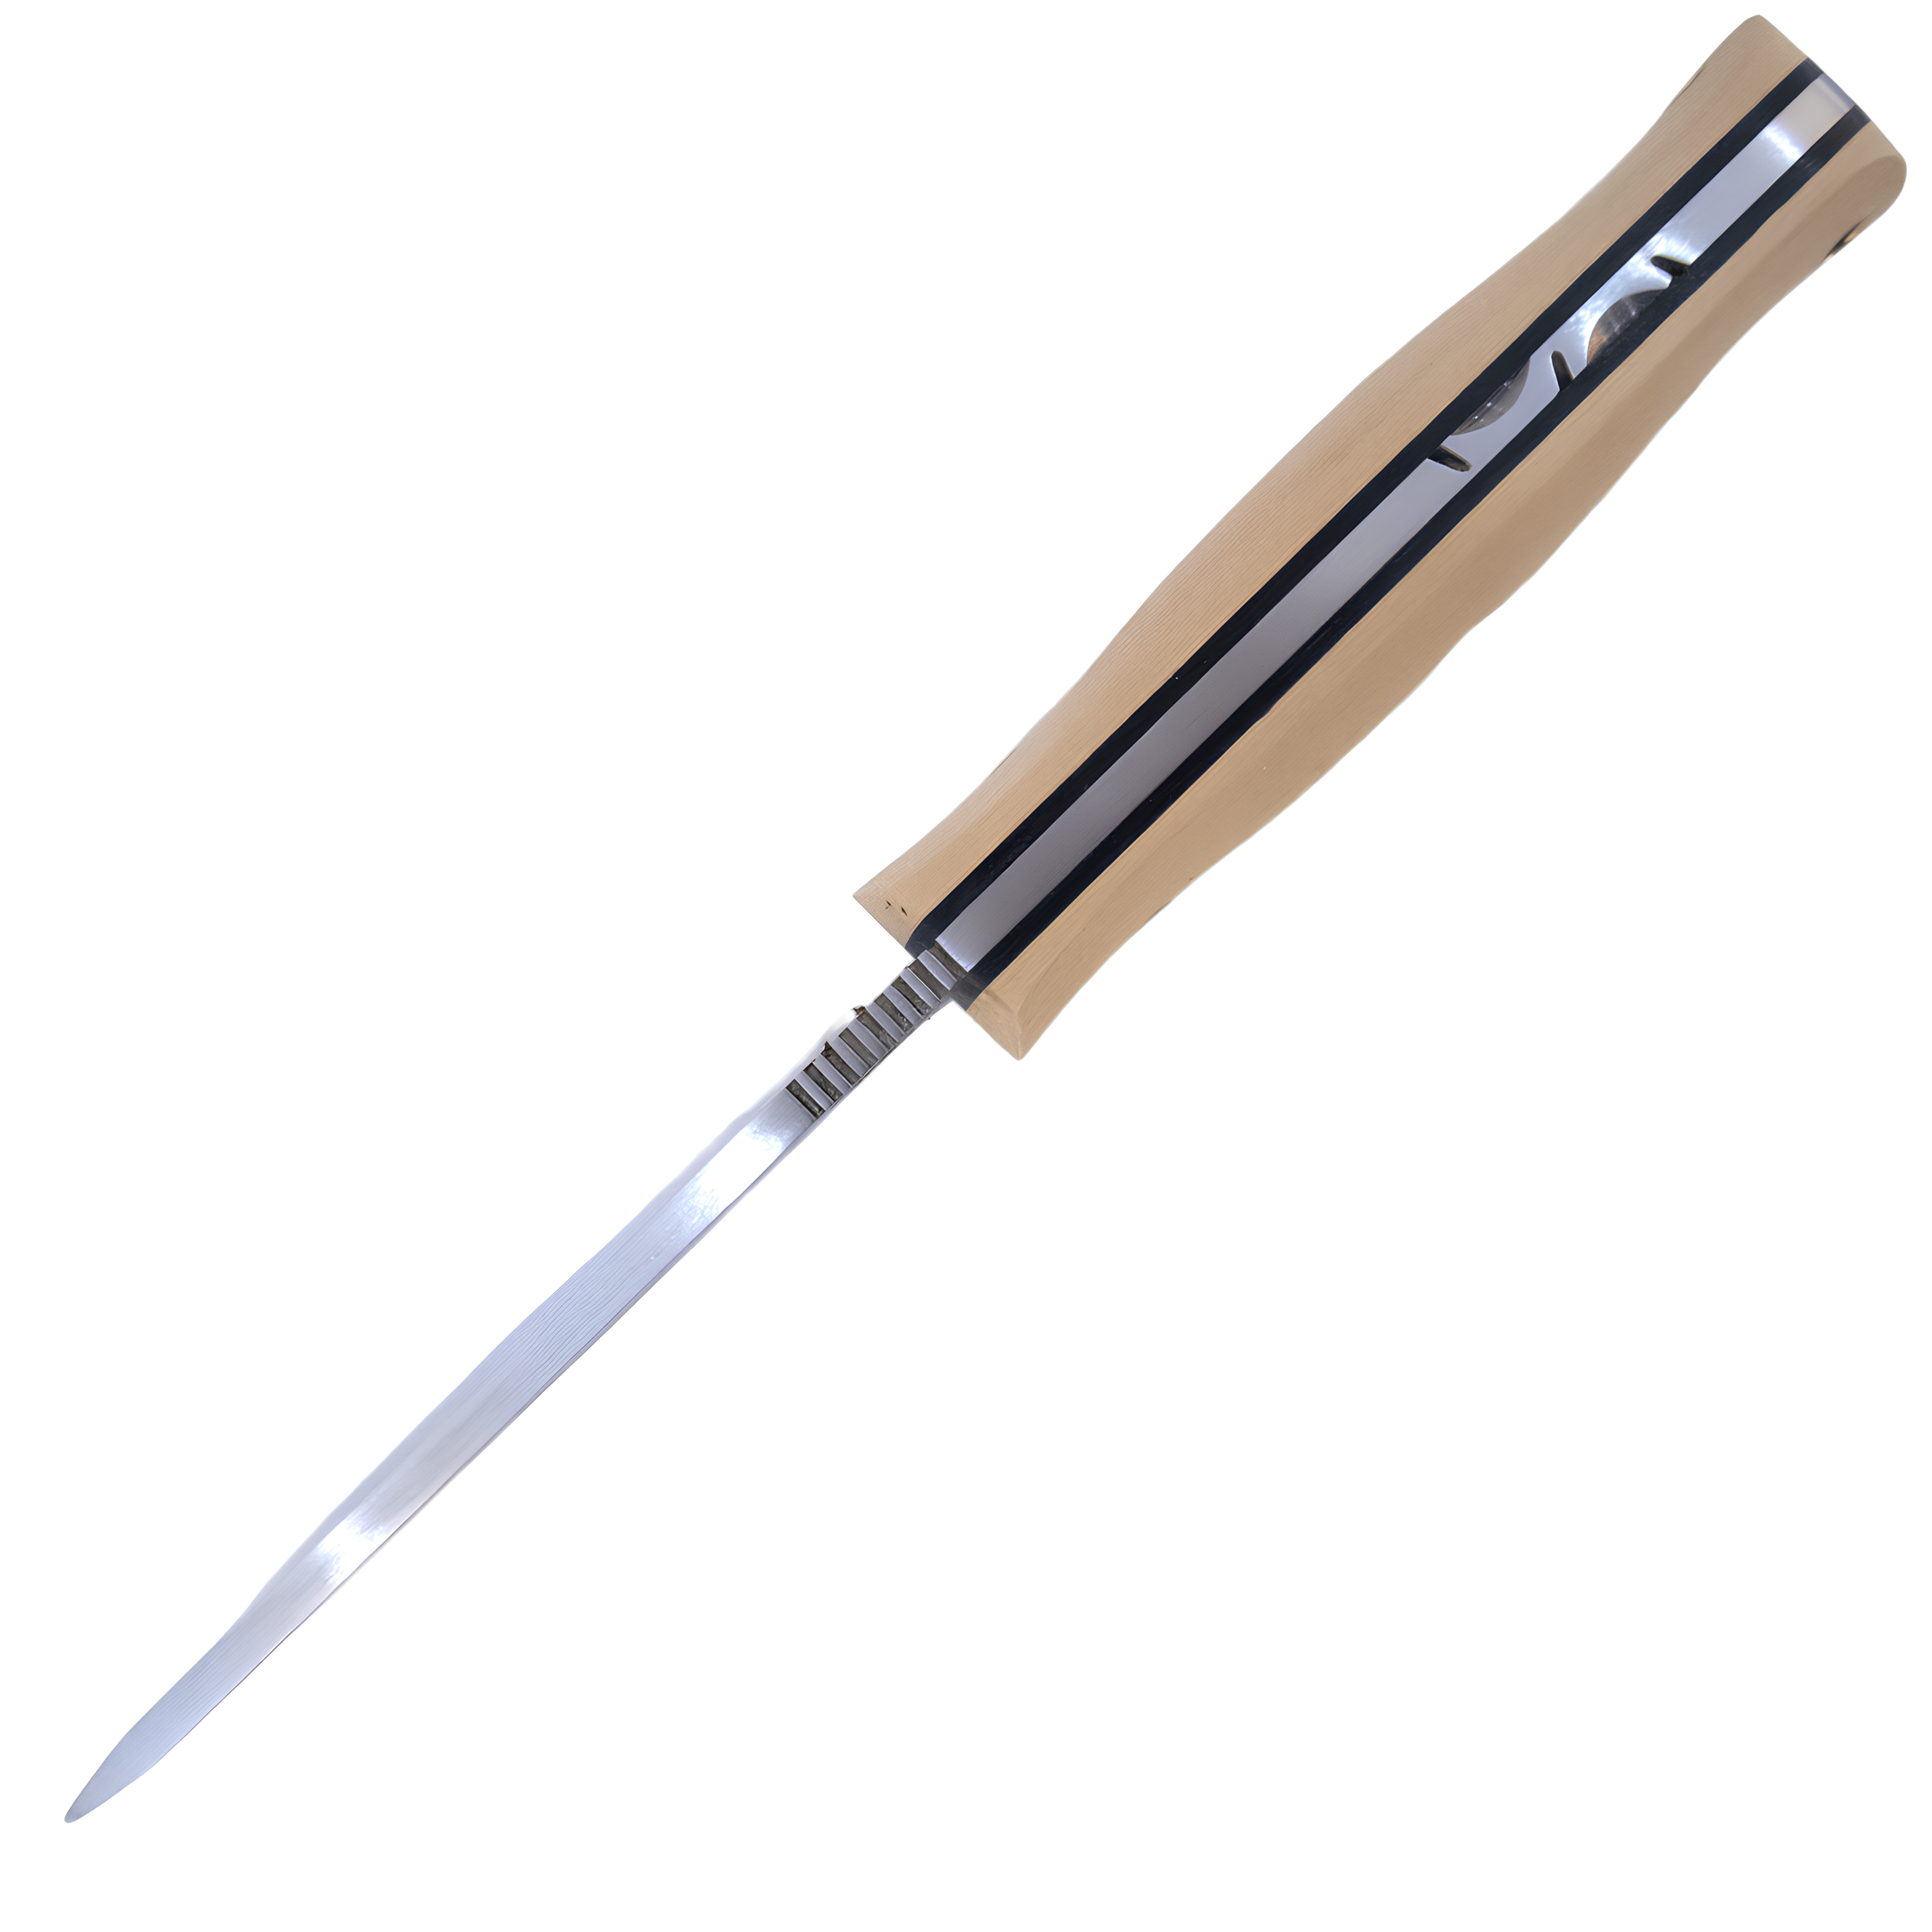 Kam Knife - A10 - N690 Steel - White Handle - Fixed Blade